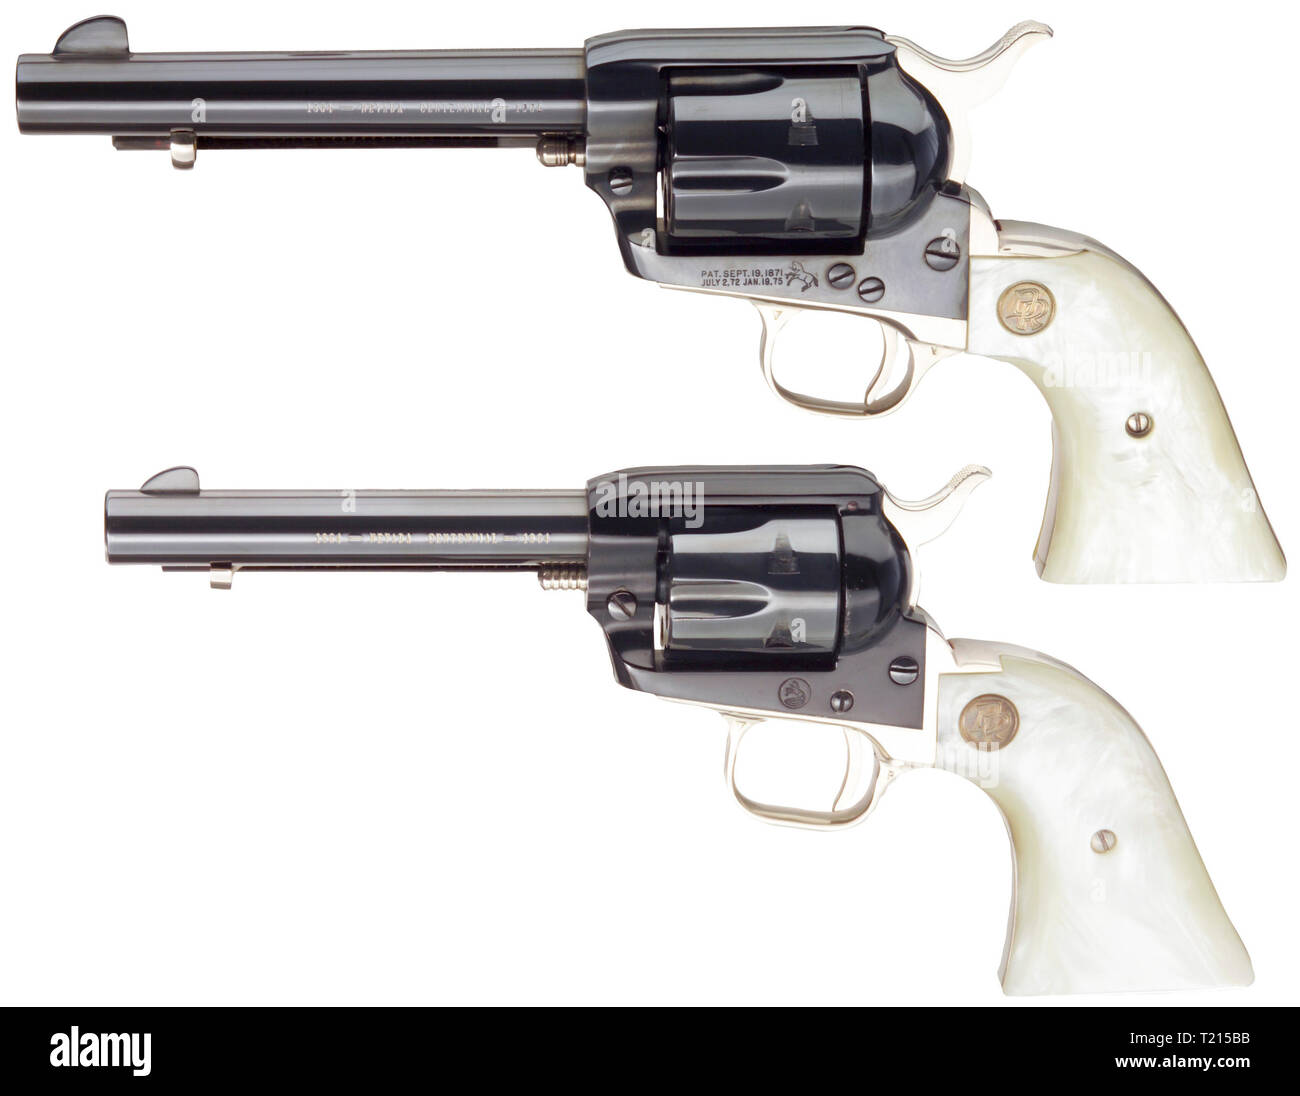 Les armes légères, revolver, Colt, commémorative du centenaire de l'État du Nevada, 1964, calibre .45, Additional-Rights Clearance-Info-Not-Available- Banque D'Images